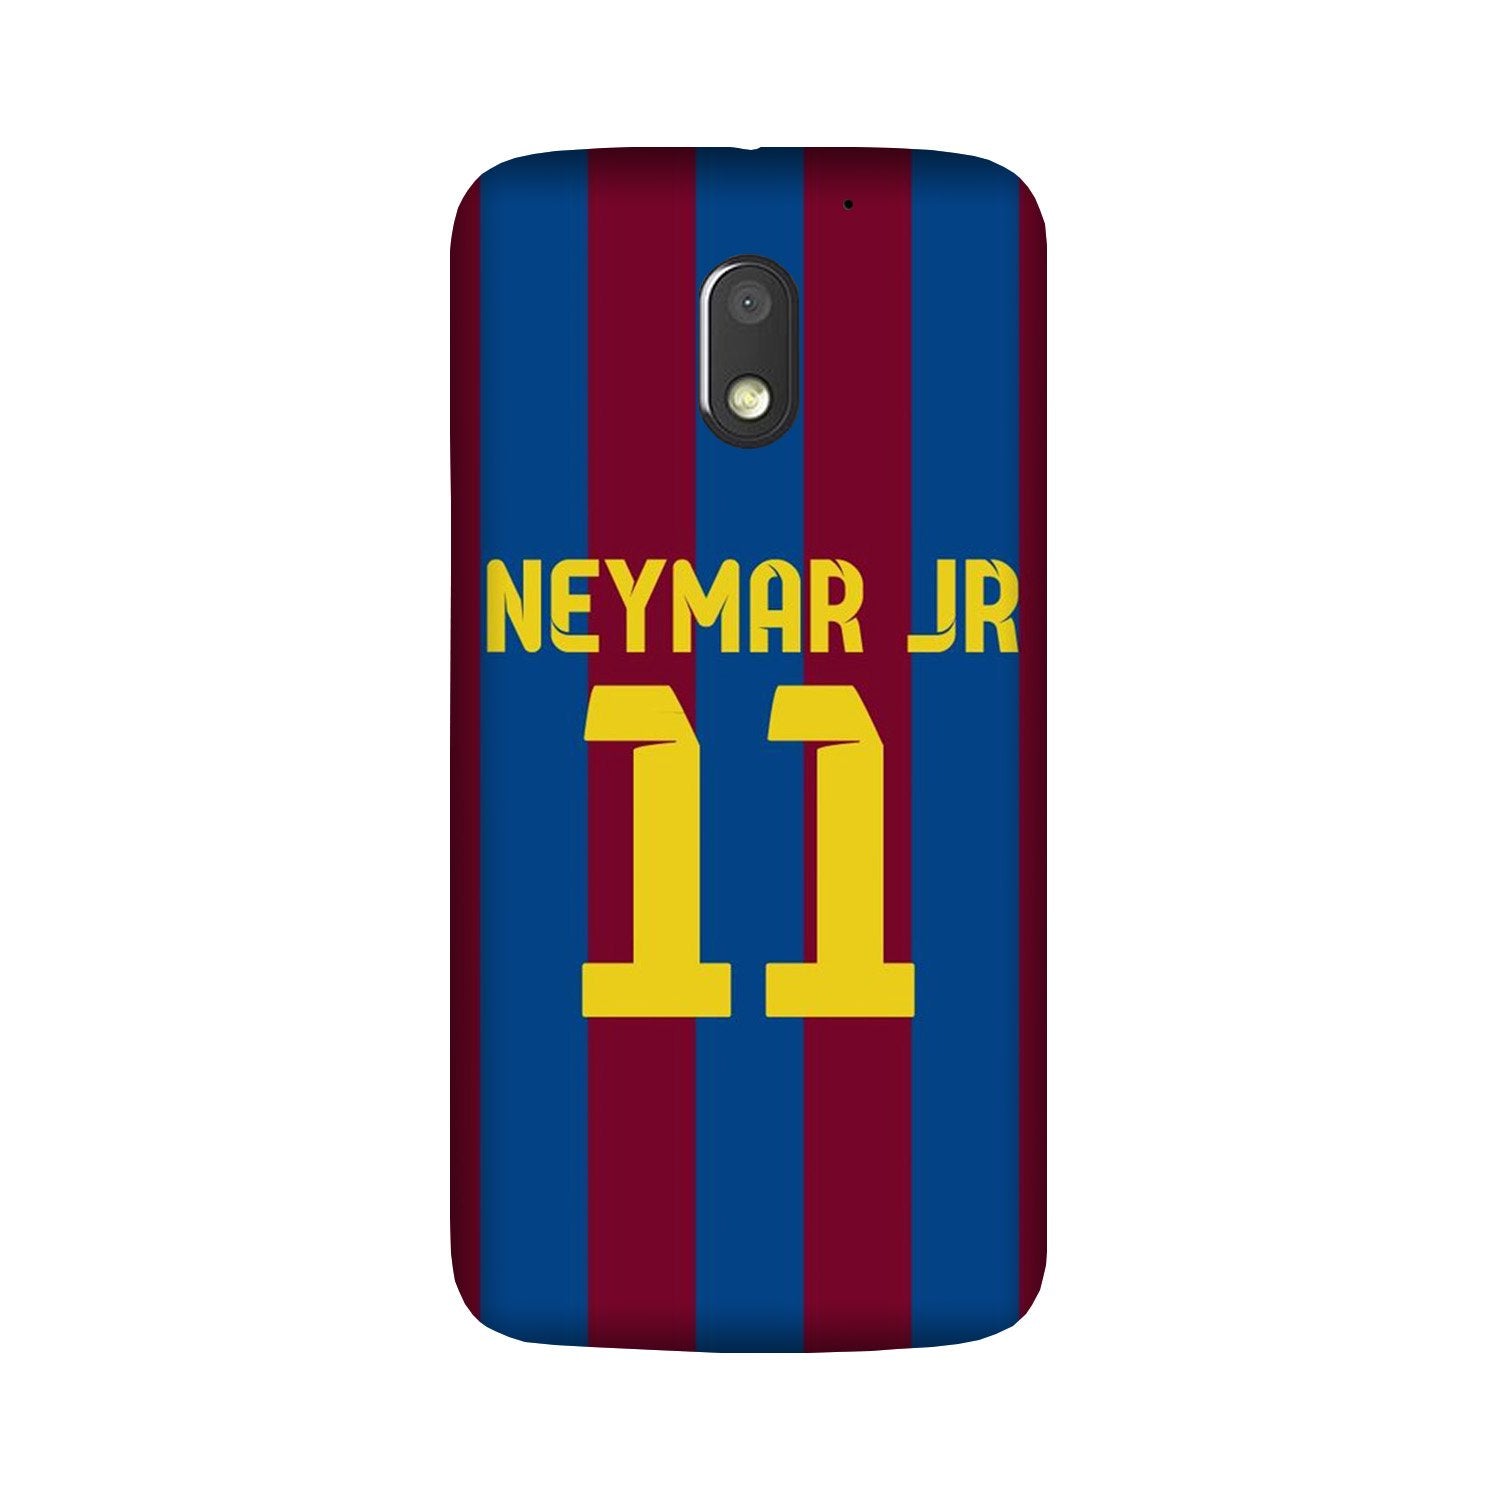 Neymar Jr Case for Moto G4 Play(Design - 162)